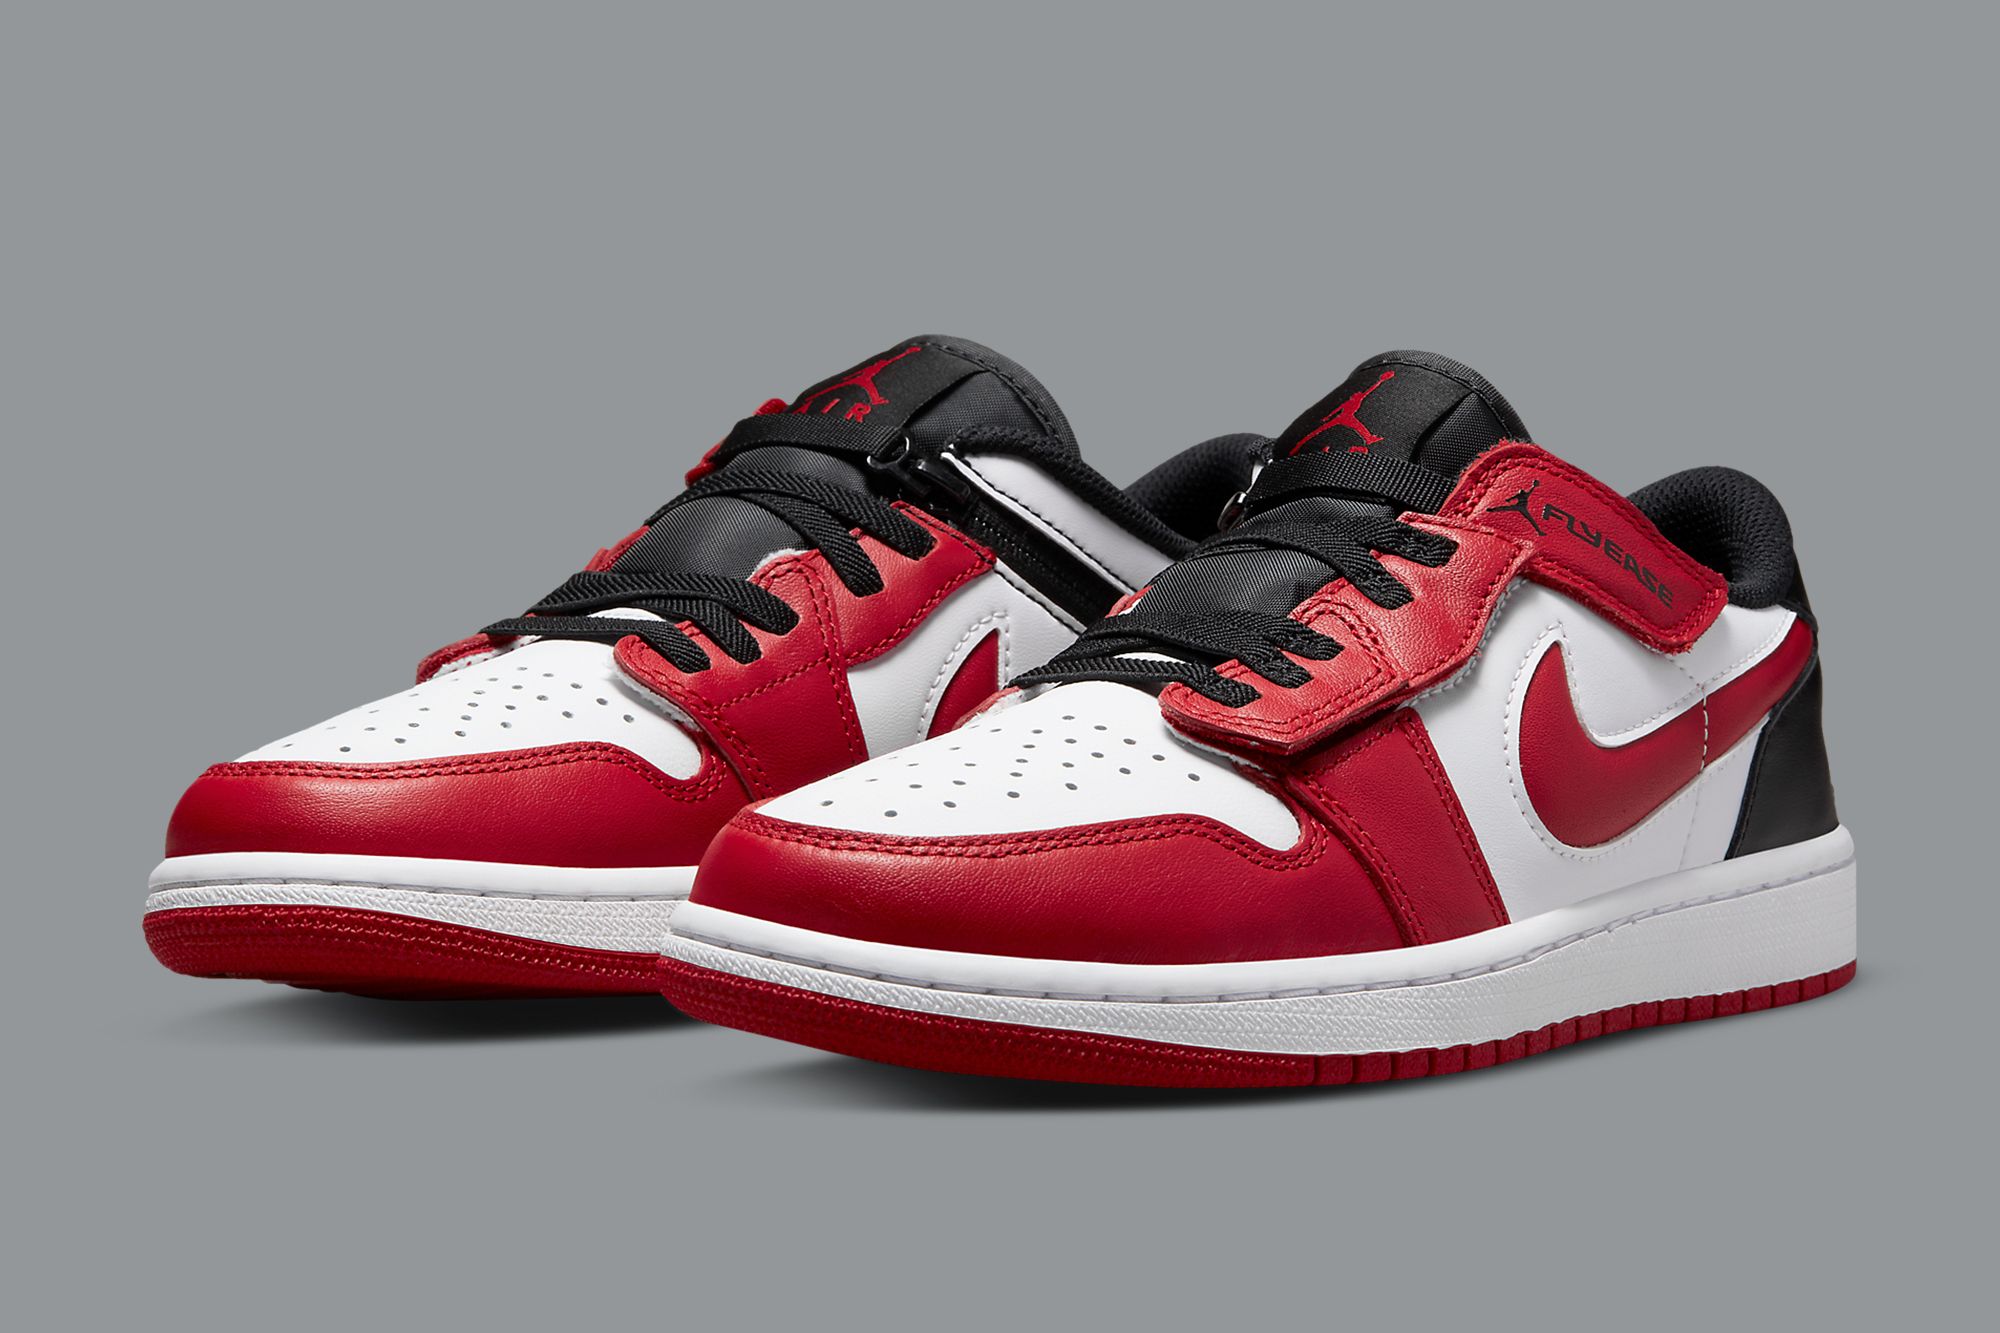 Air Jordan 1 red and white low jordan 1 Low - Sneaker Freaker